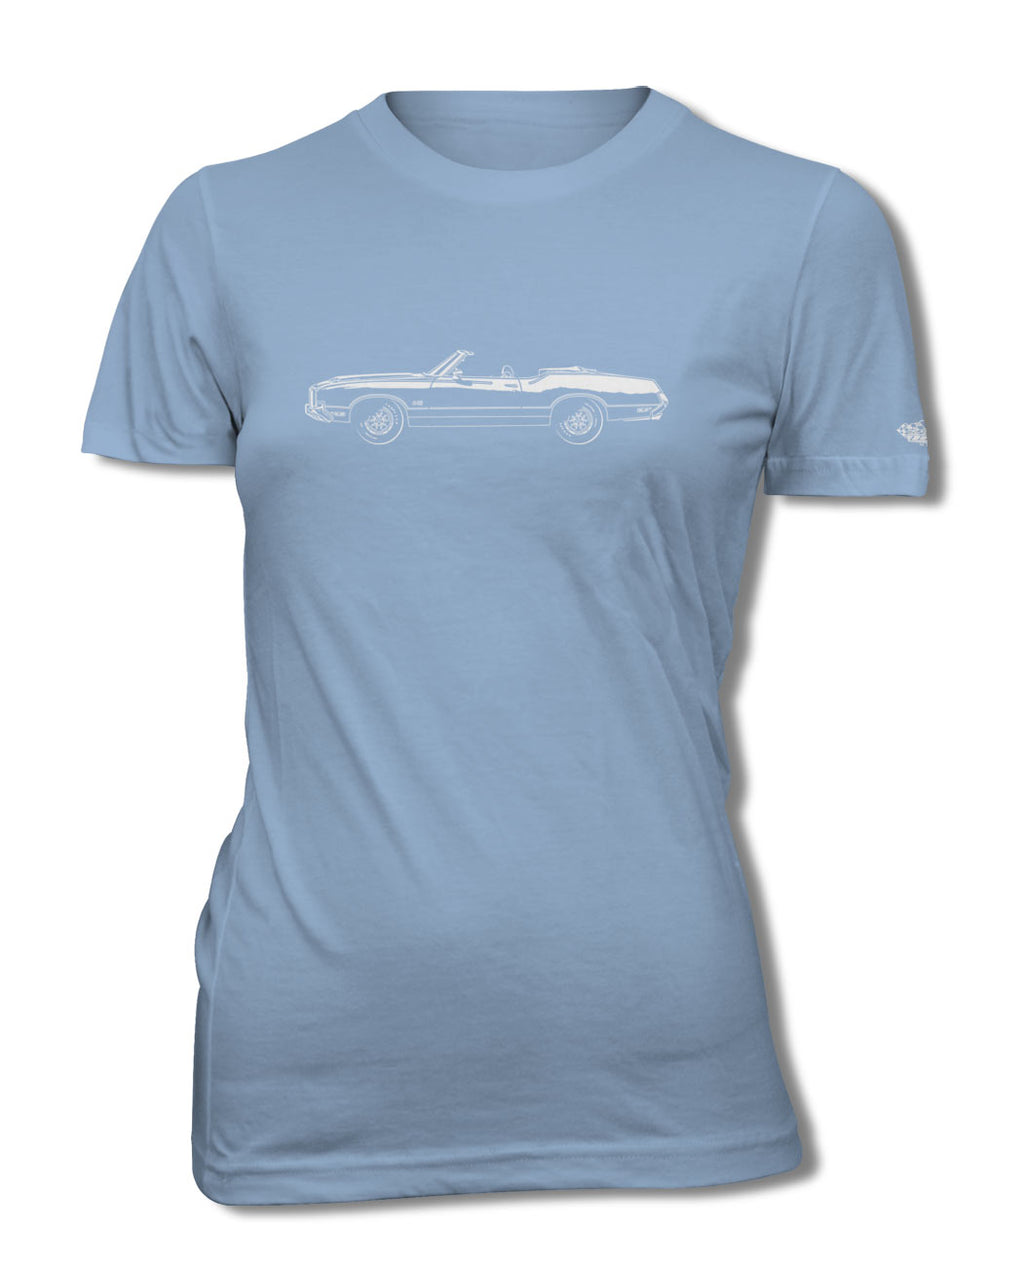 1972 Oldsmobile Cutlass 4-4-2 Convertible T-Shirt - Women - Side View